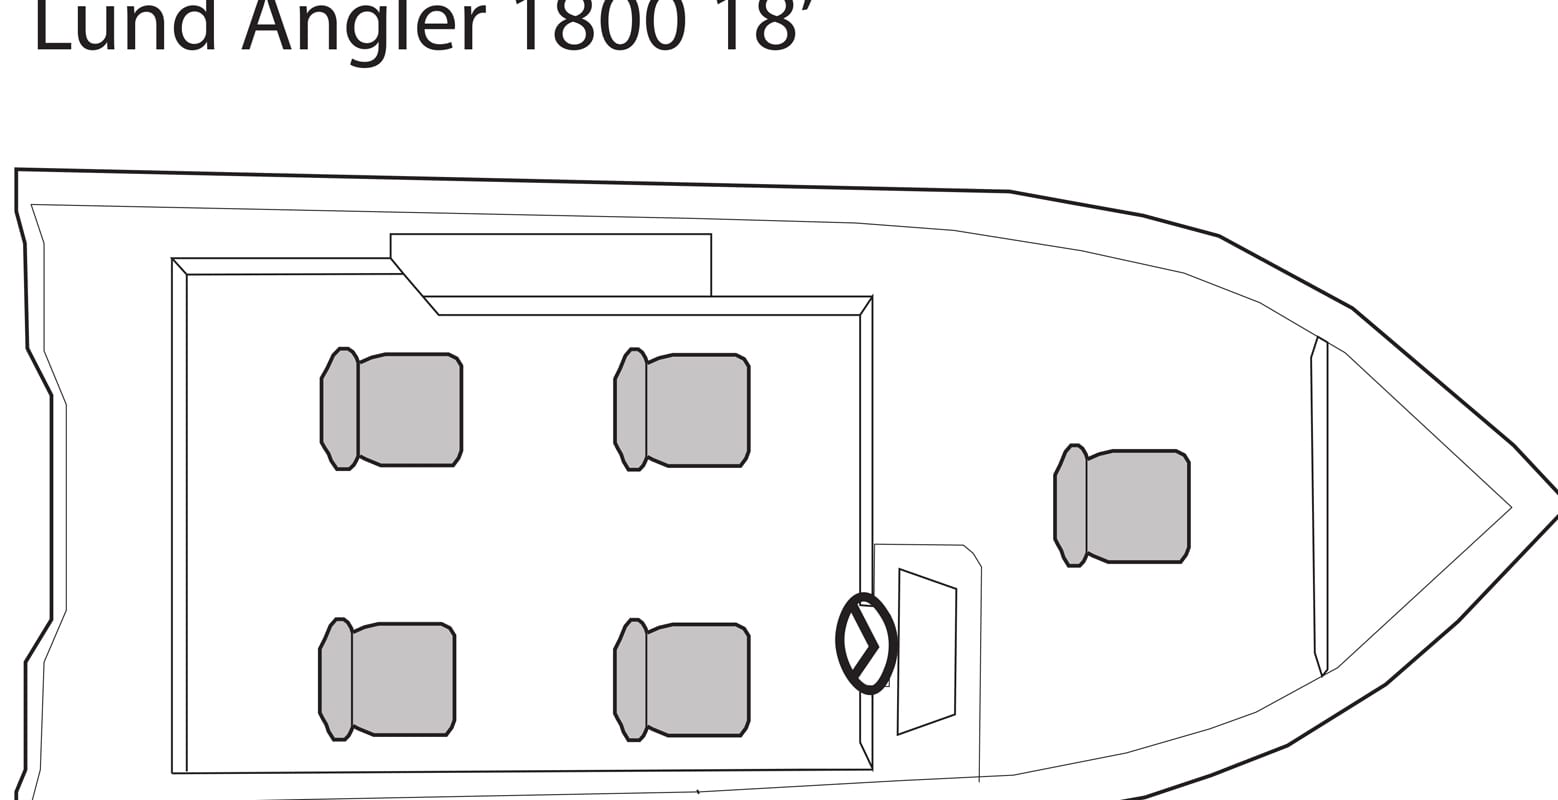 Lund Angler 18' fishing boat seating plan.